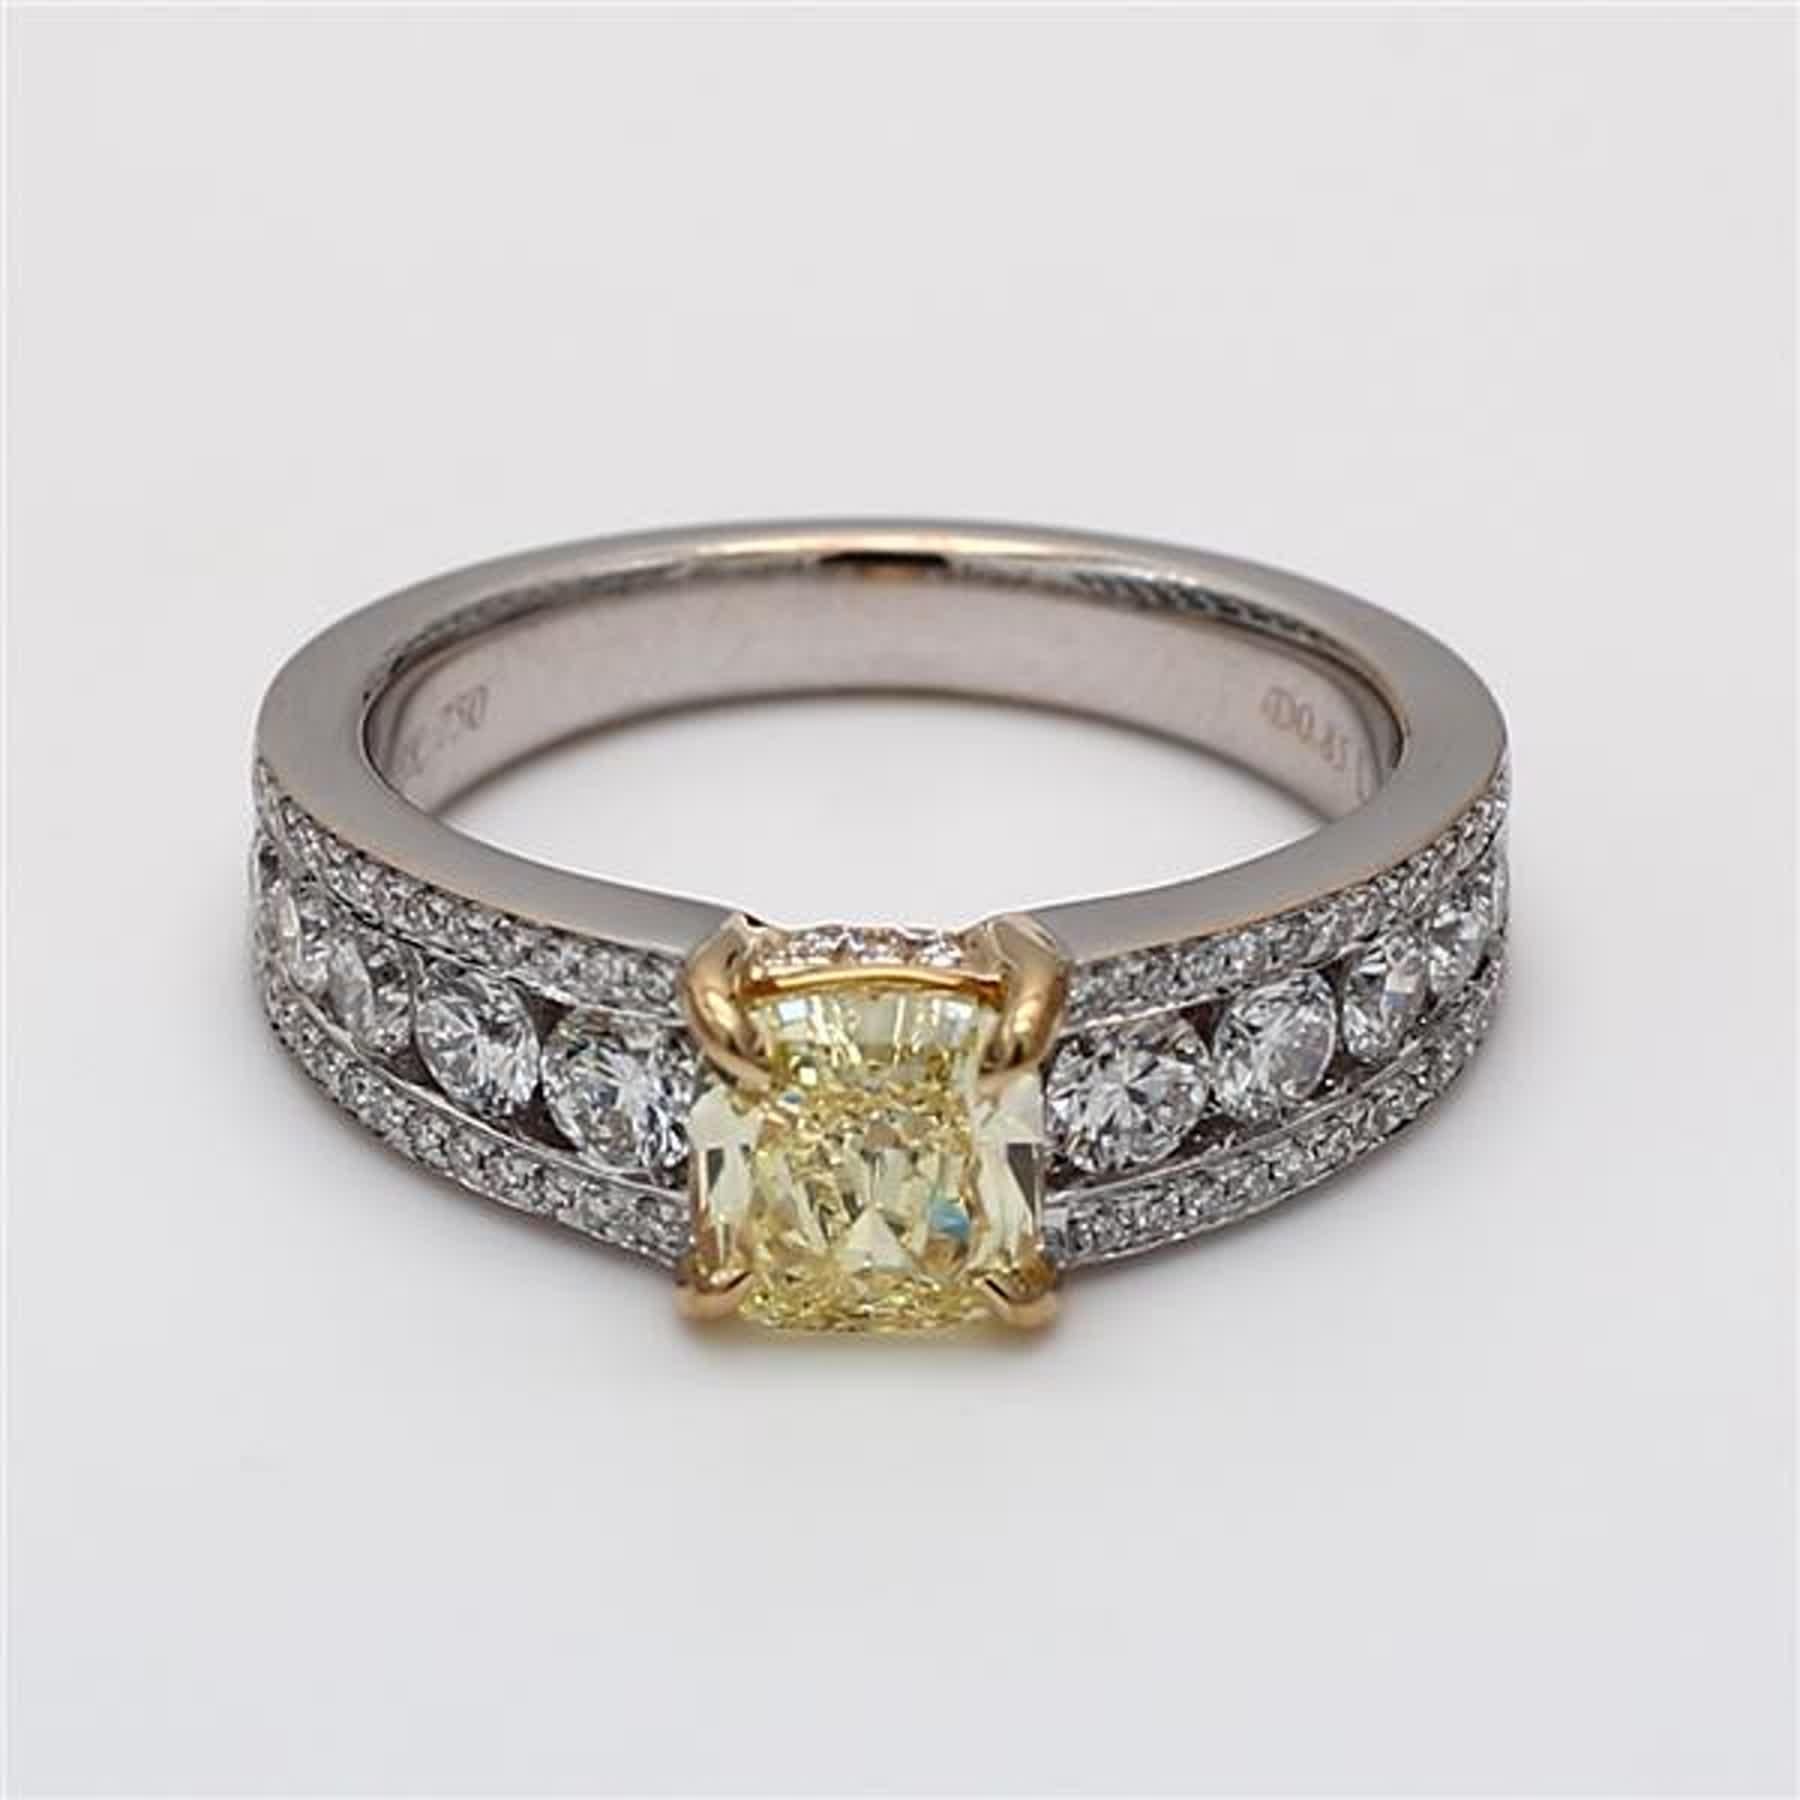 Der klassische GIA-zertifizierte Diamantring von RareGemWorld. Montiert in einer schönen Fassung aus 18 Karat Gelb- und Weißgold mit einem natürlichen gelben Diamanten im Kissenschliff. Der gelbe Diamant ist von runden weißen Naturdiamanten umgeben.